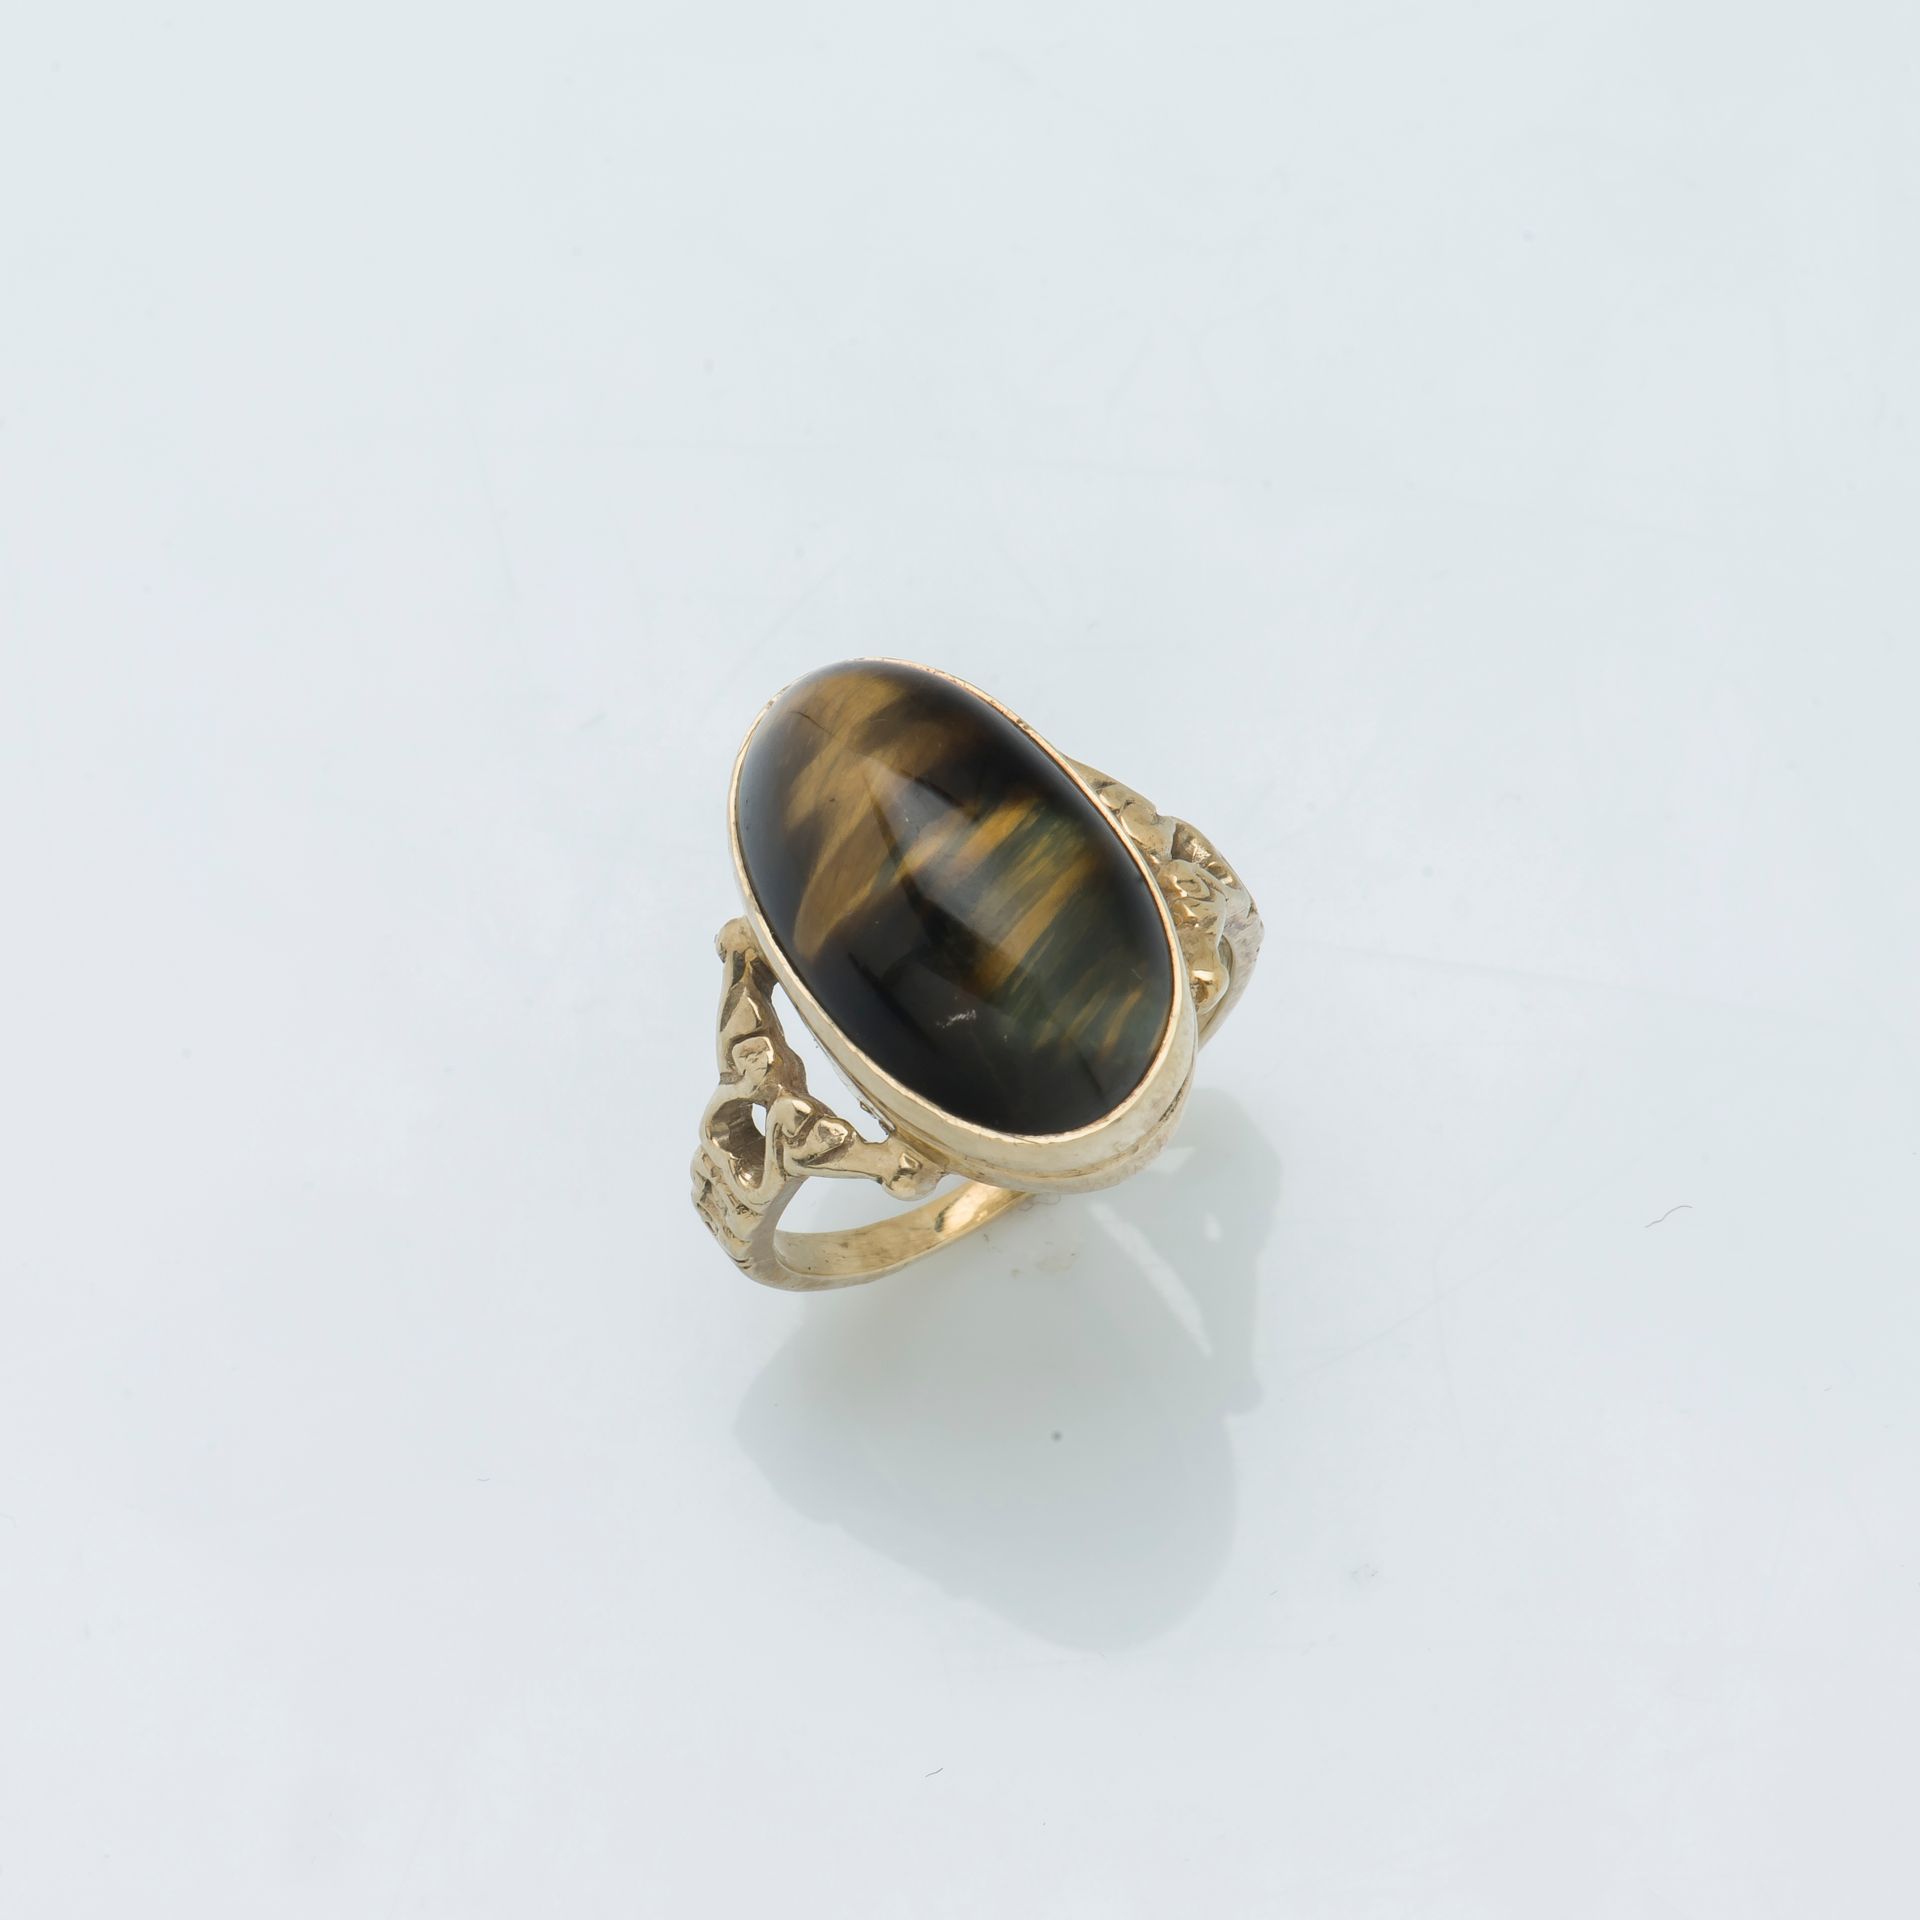 Null 一枚9K黄金戒指（375 ‰），镶嵌着凸圆形鹰眼石，戒指的肩部有镂空装饰。

手指大小：52 总重量：5.1克